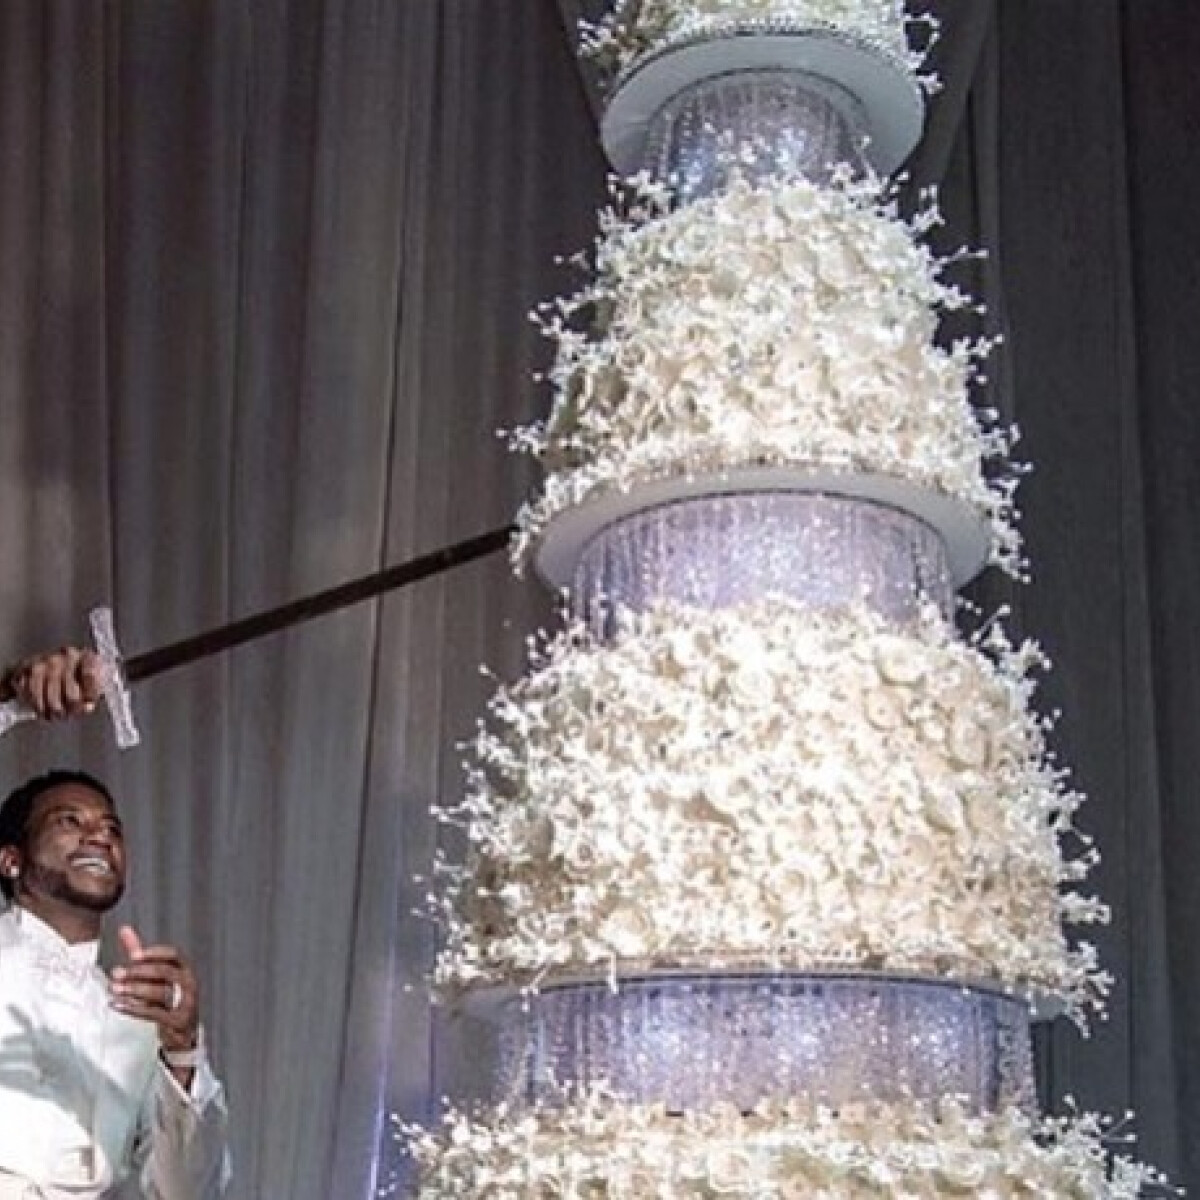 Így néz ki egy 19 MILLIÓ FORINTOS esküvői torta - nem, sajnos nem elírás